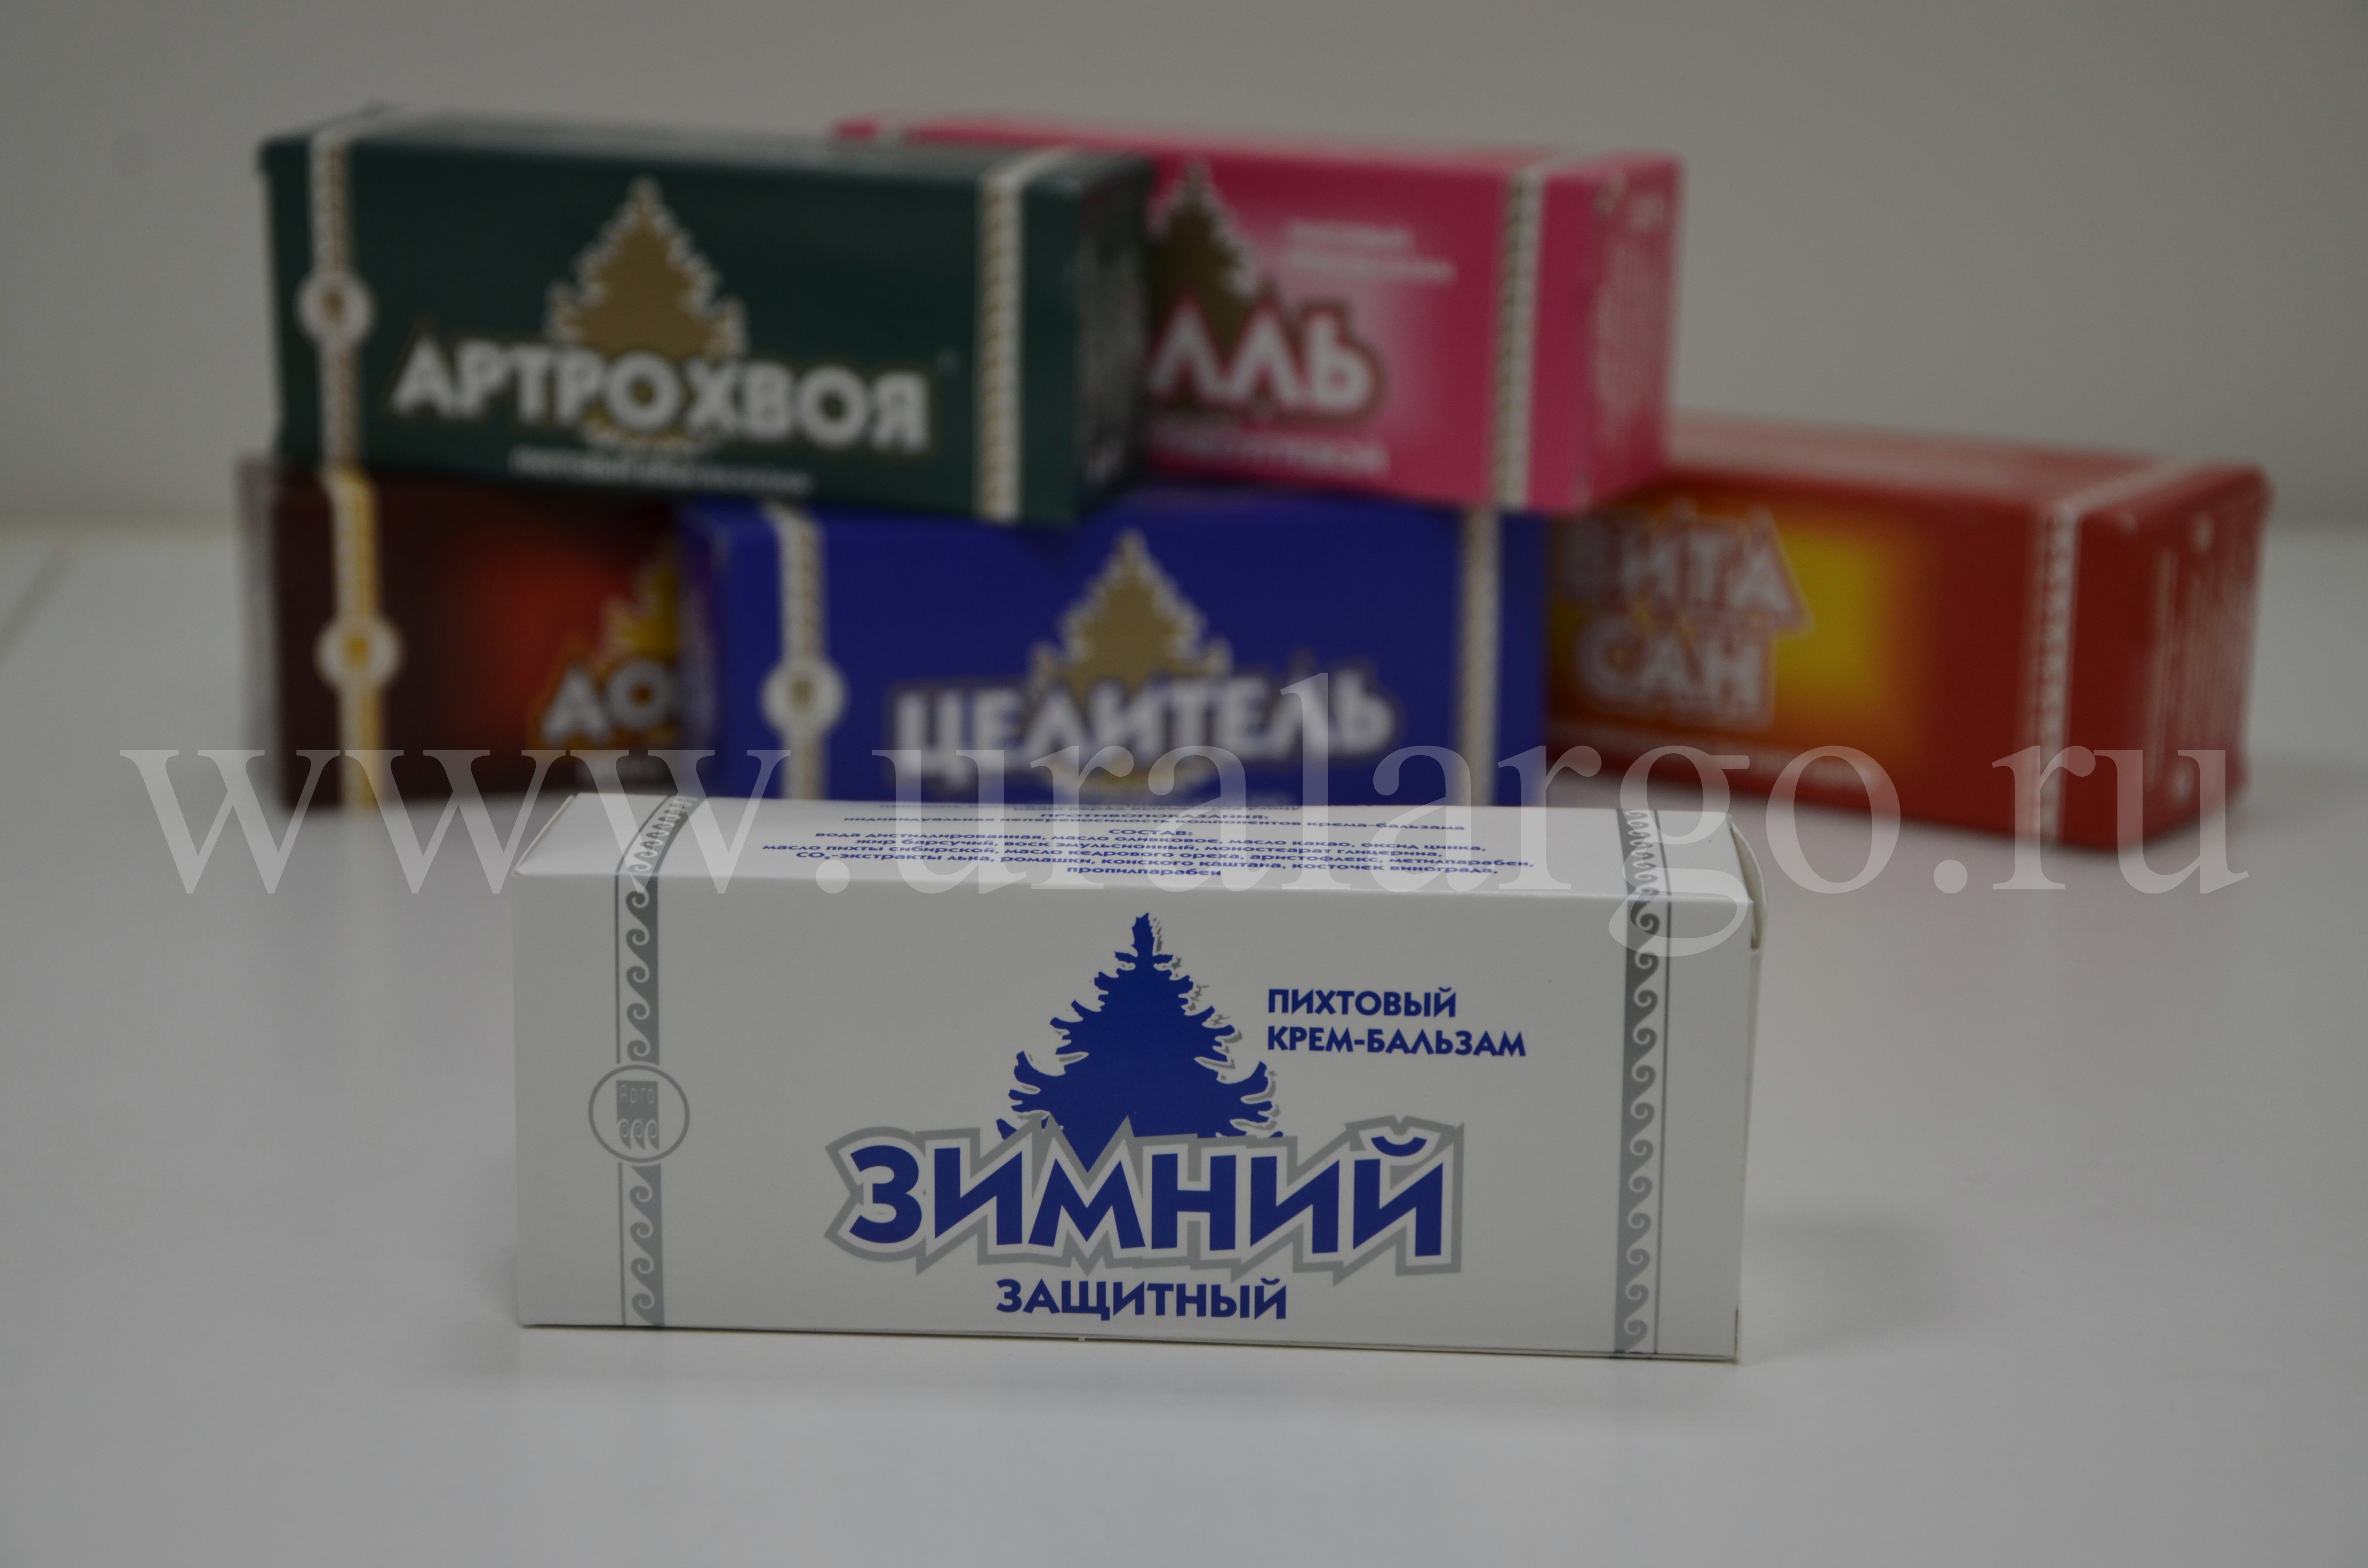 Зимний крем арго купить Екатеринбург